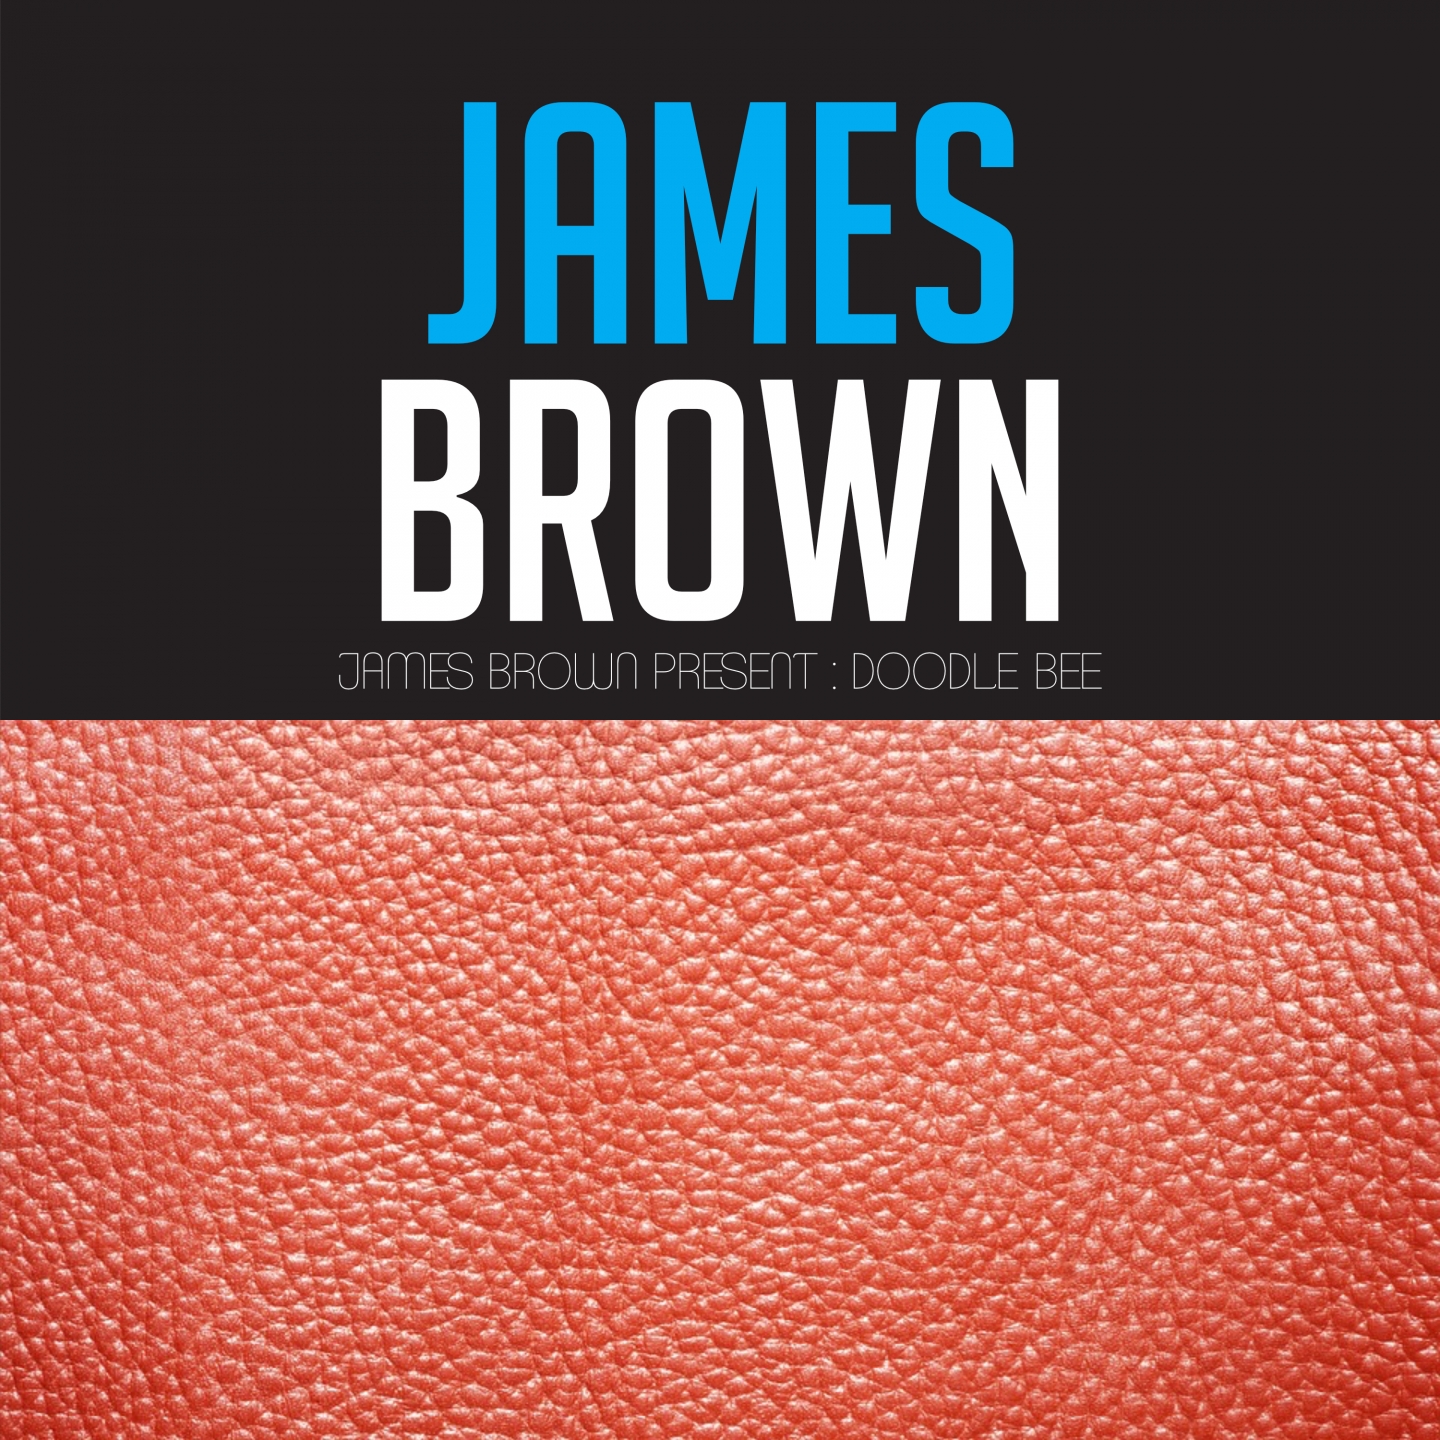 James Brown presents : Doodle Bee